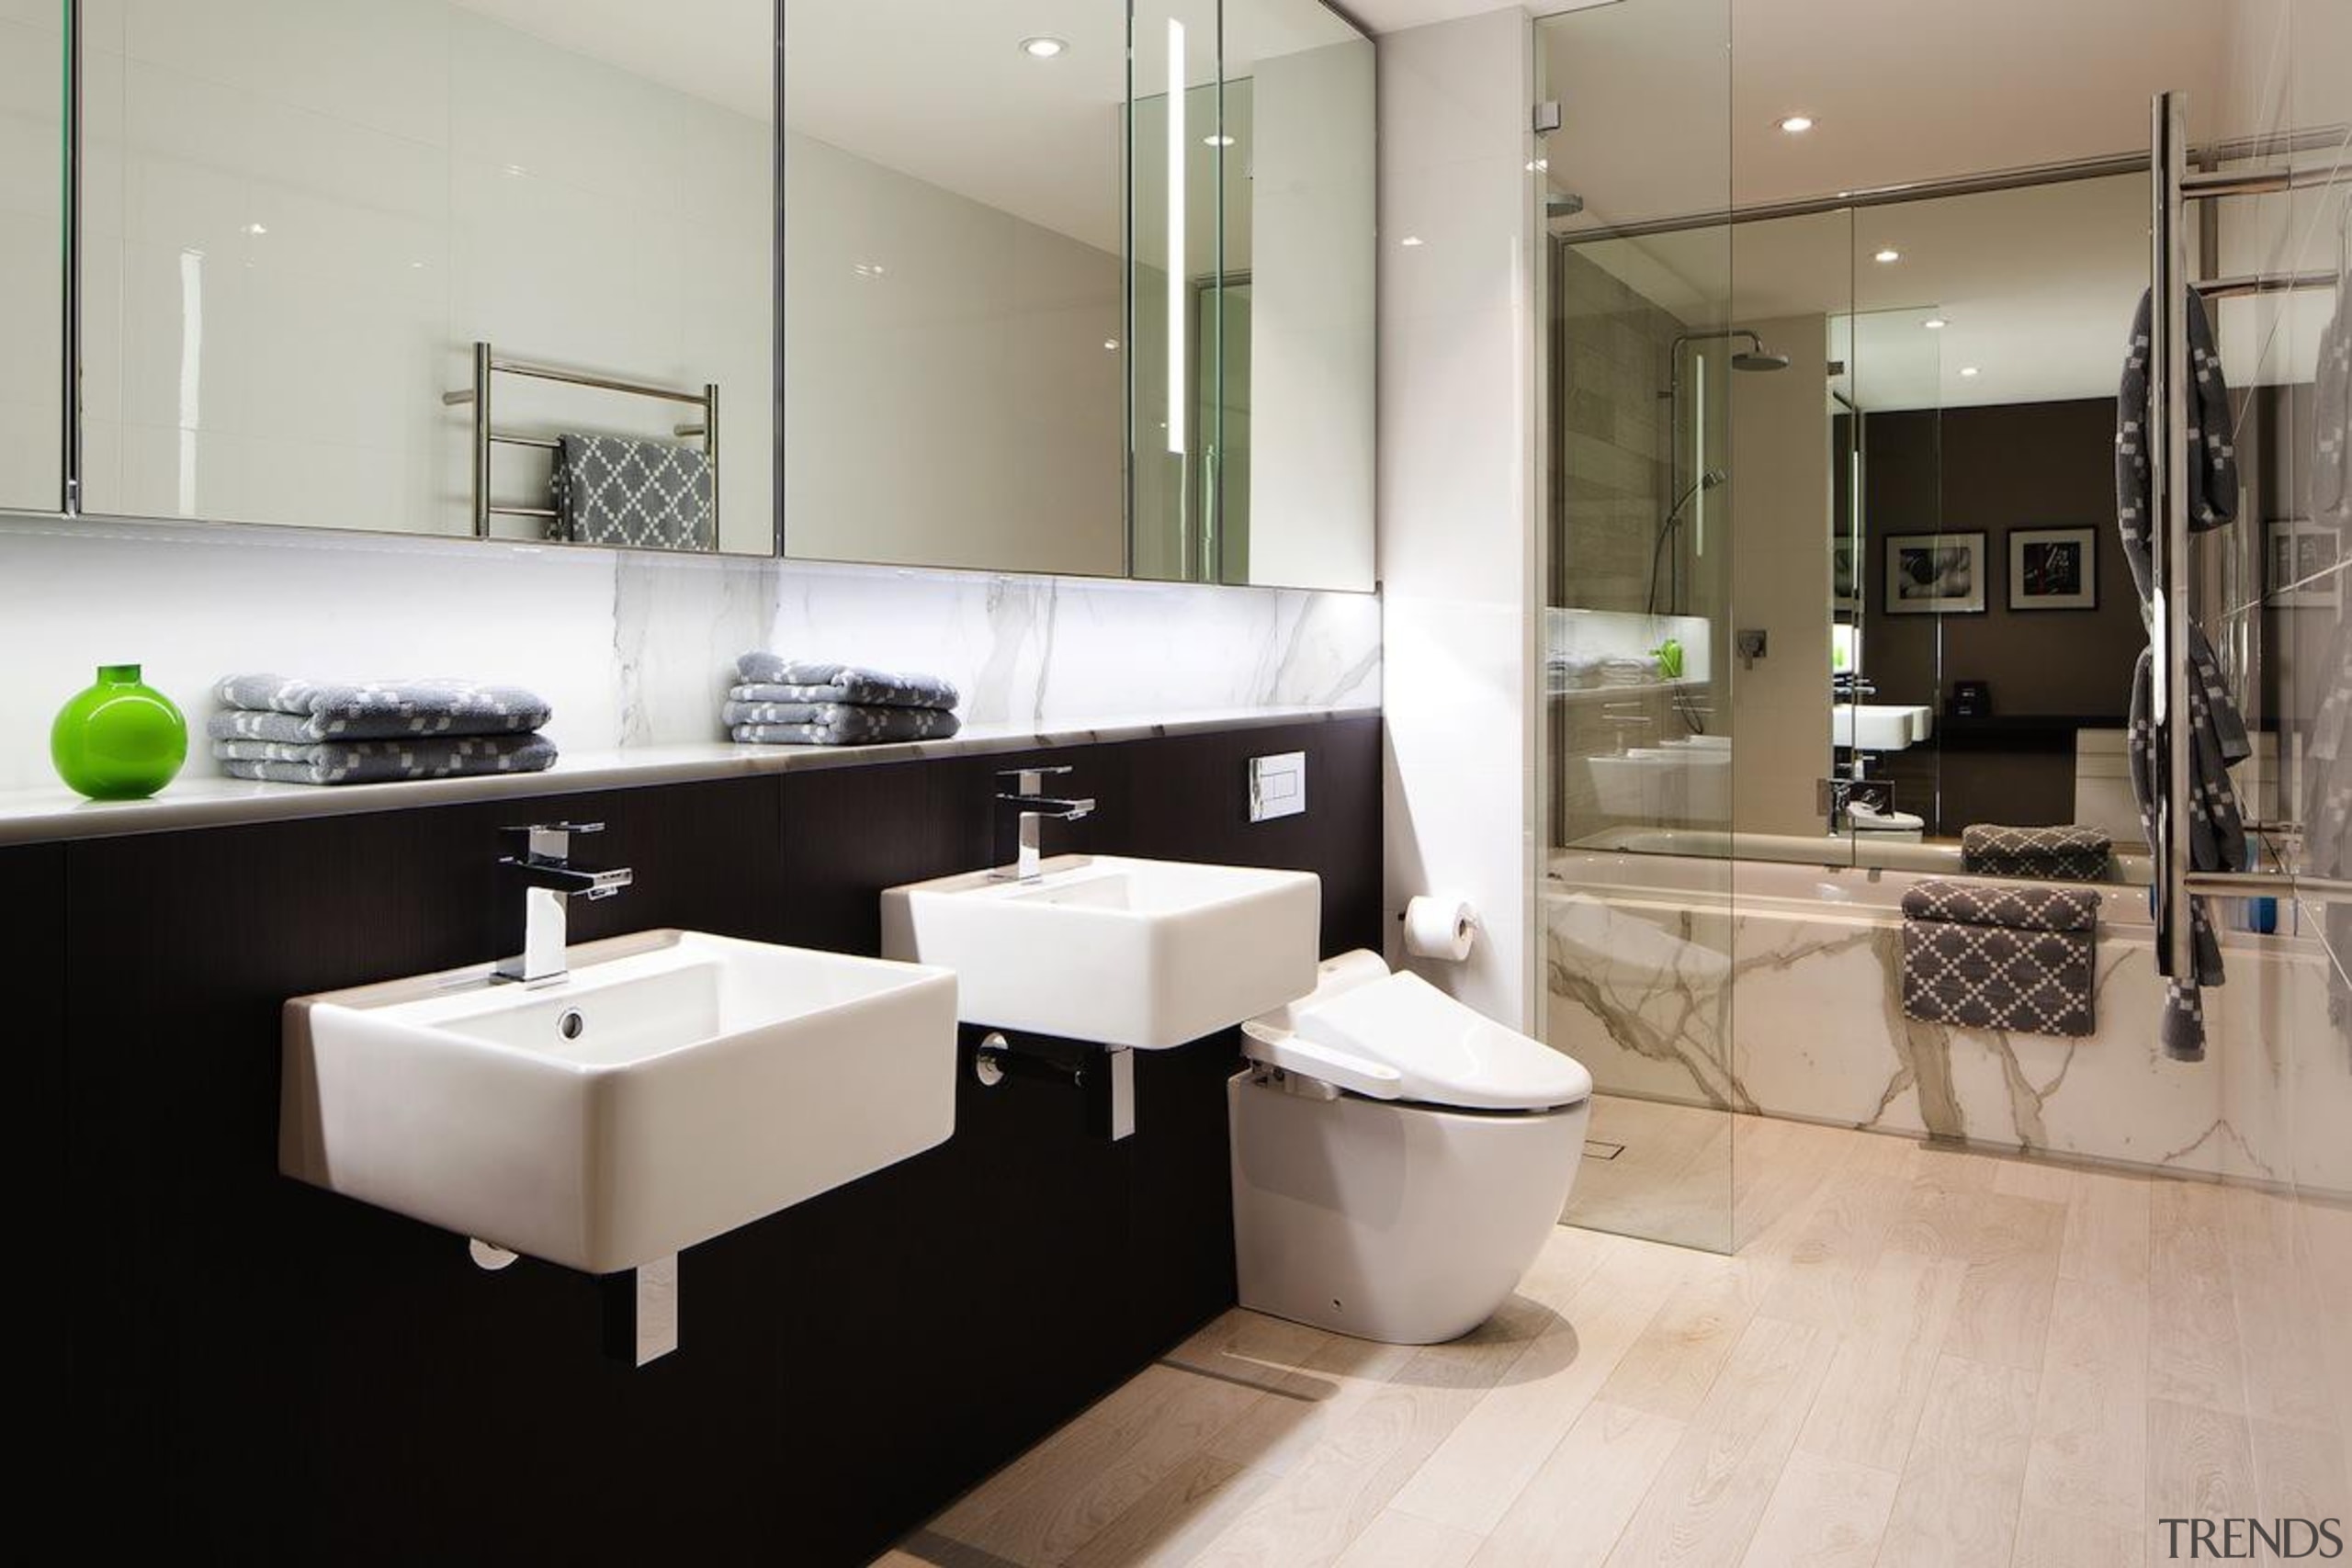 Archer + Wright – Finalist - 2015 Trends bathroom, interior design, plumbing fixture, product design, room, sink, gray